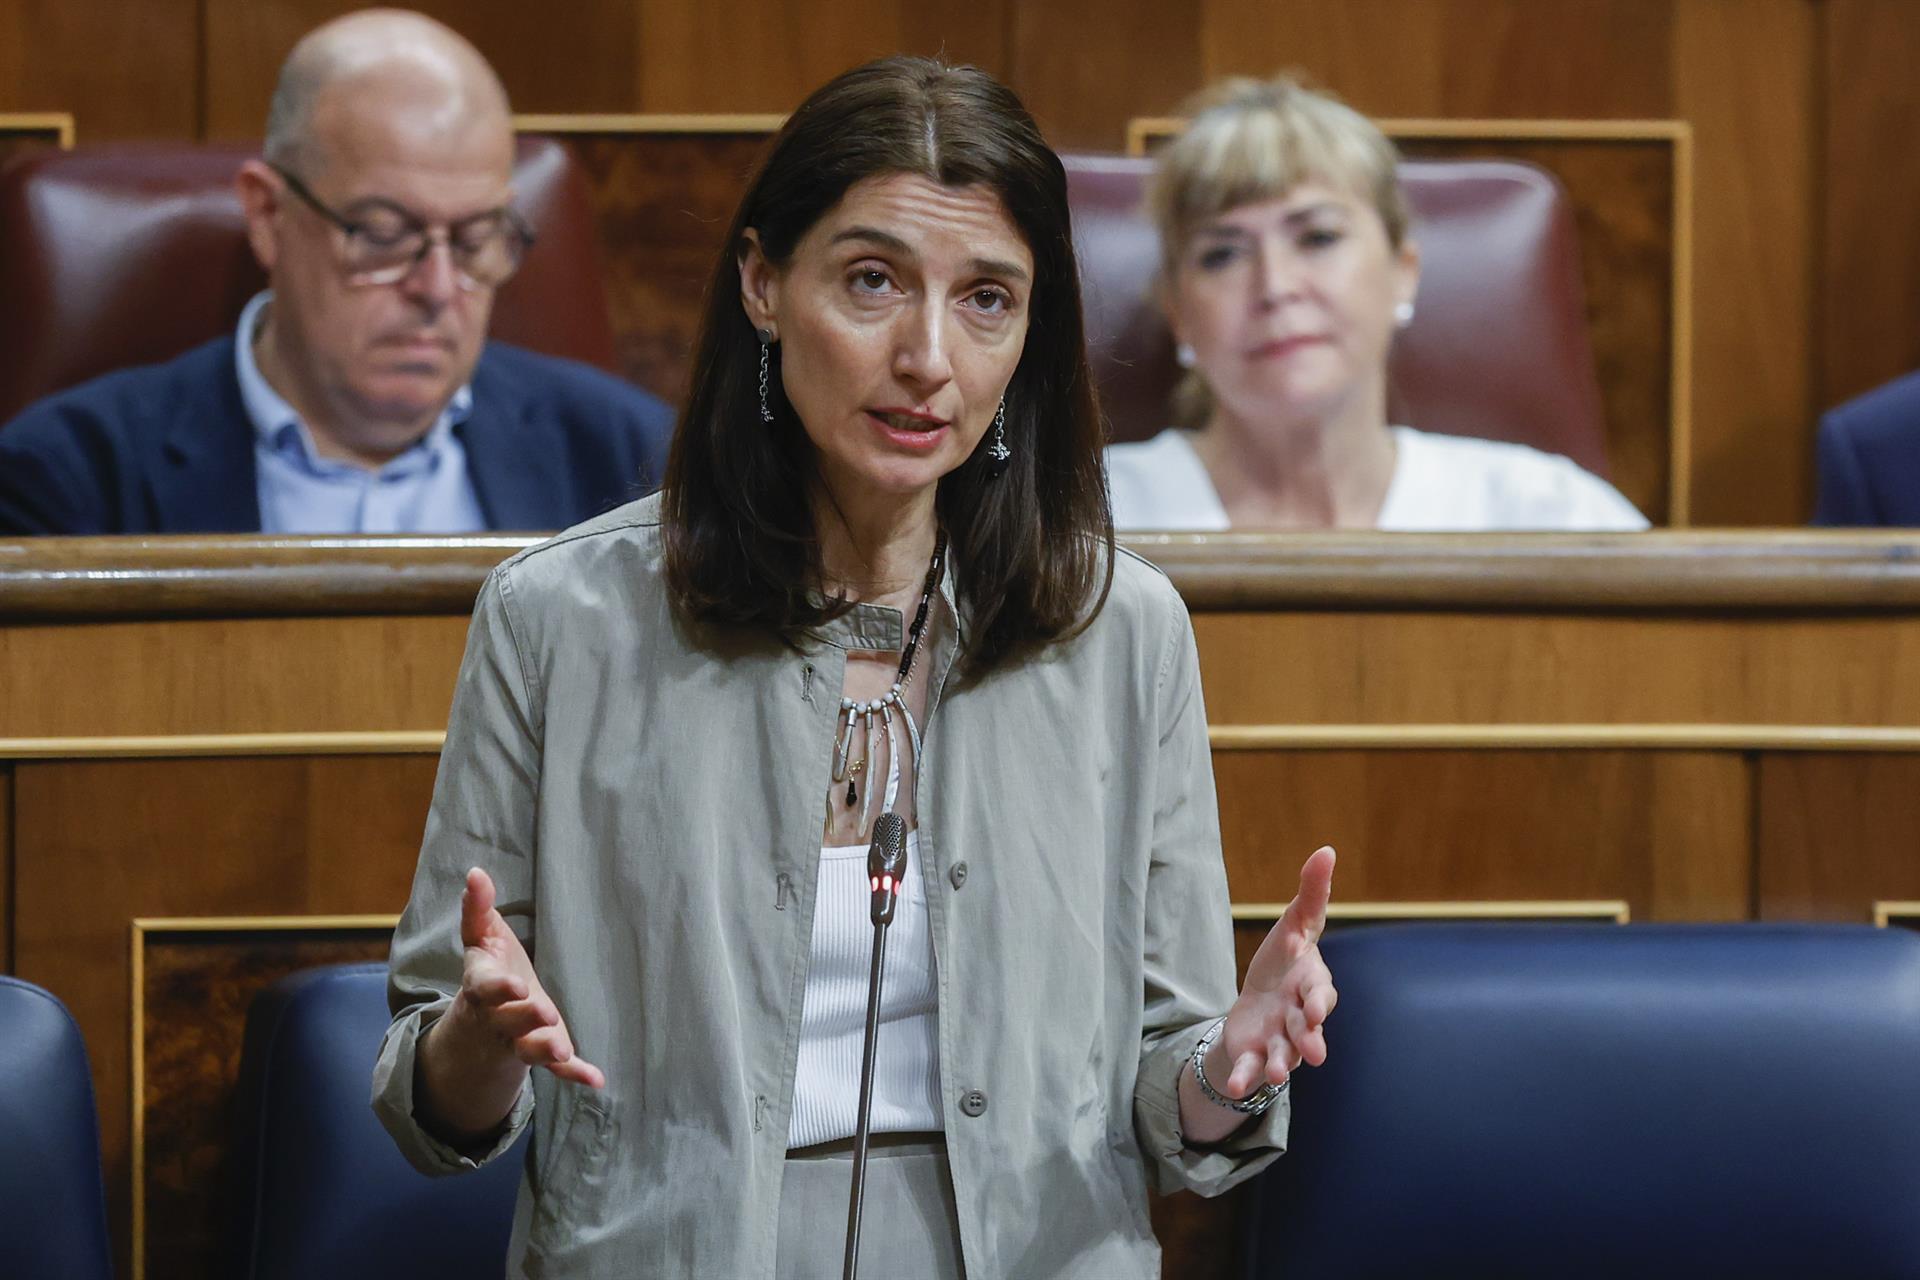 Puigdemont enxampa la ministra Llop: "Cap dia sense una mentida, terraplanisme"